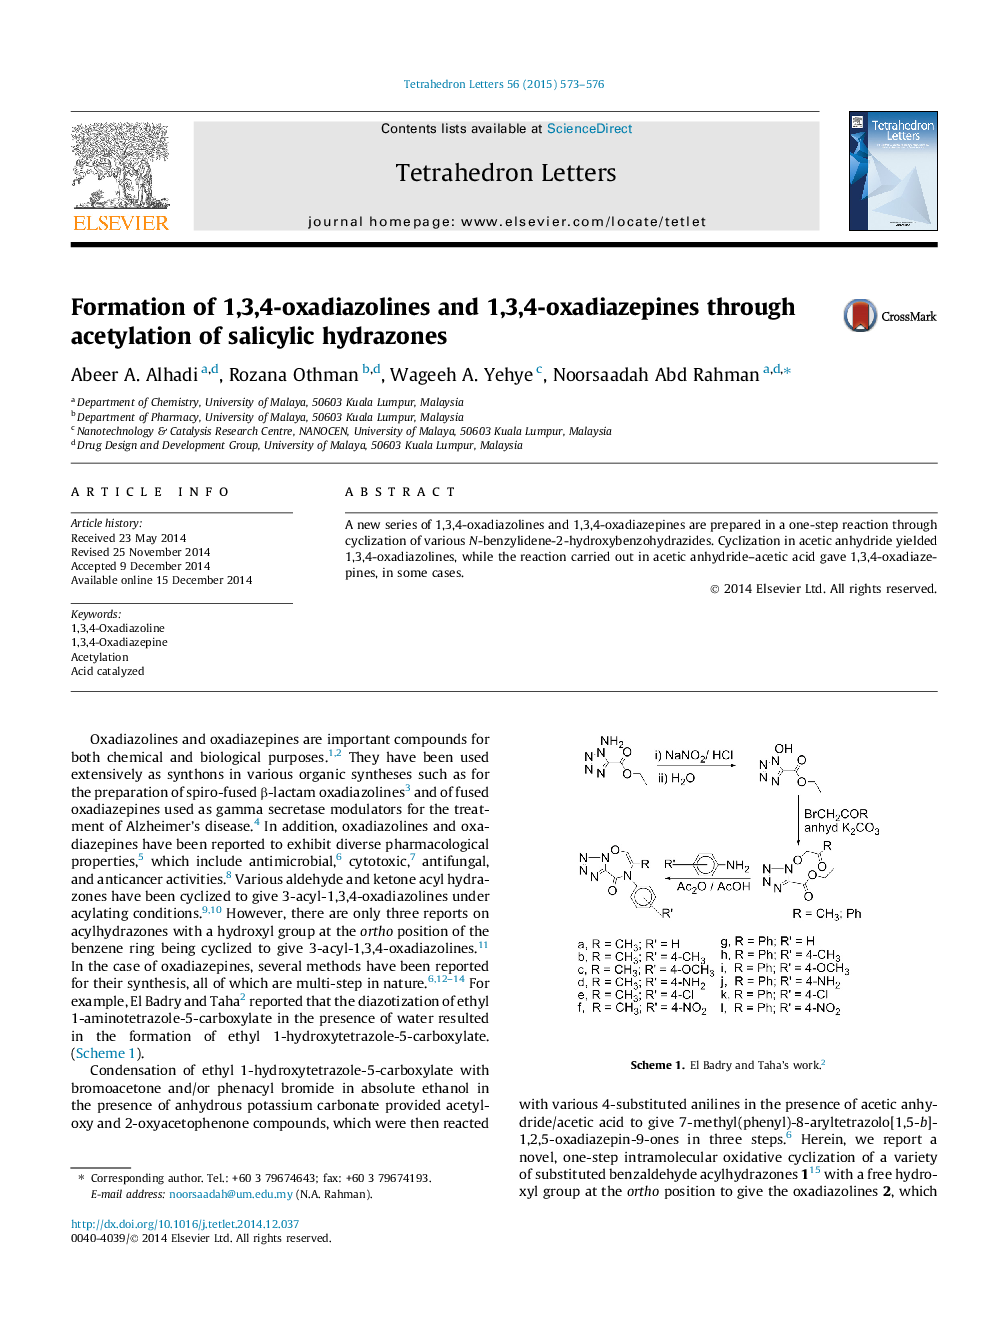 تشکیل 1،3،4-اکسیدیاازولین و 1،3،4-اکسیدا دیازپین ها از طریق استیلینگ هیدرازون سالیسیلیک 